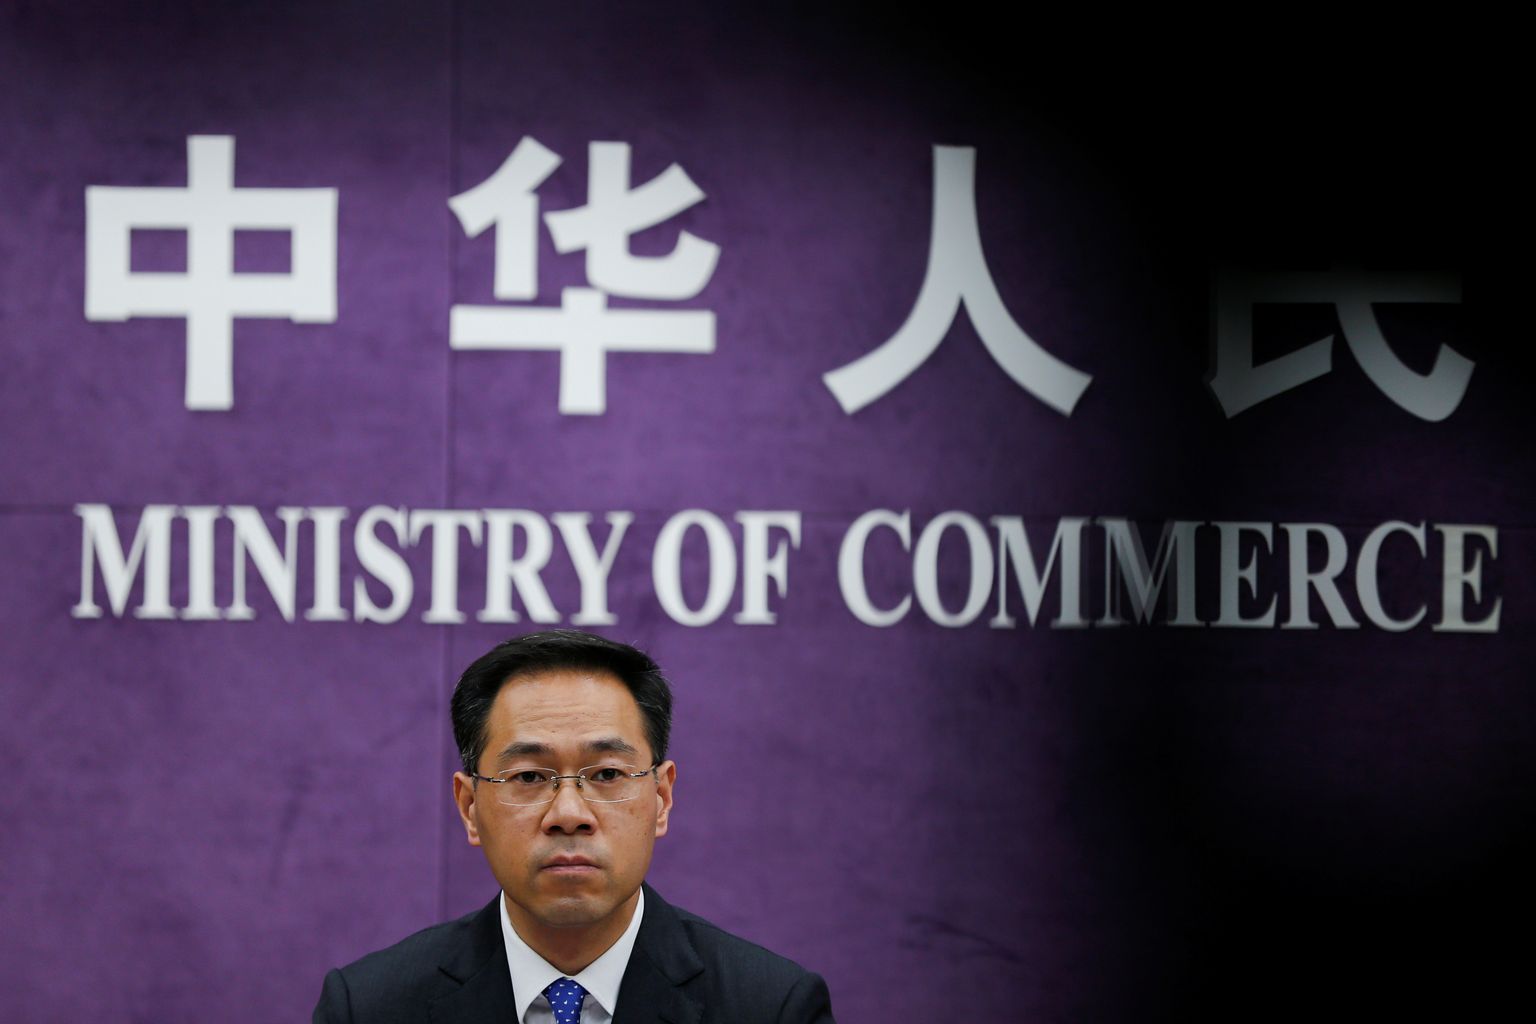 Hiina kaubandusministeeriumi pressiesindaja Gao Feng 2018. aasta juunis Pekingis.